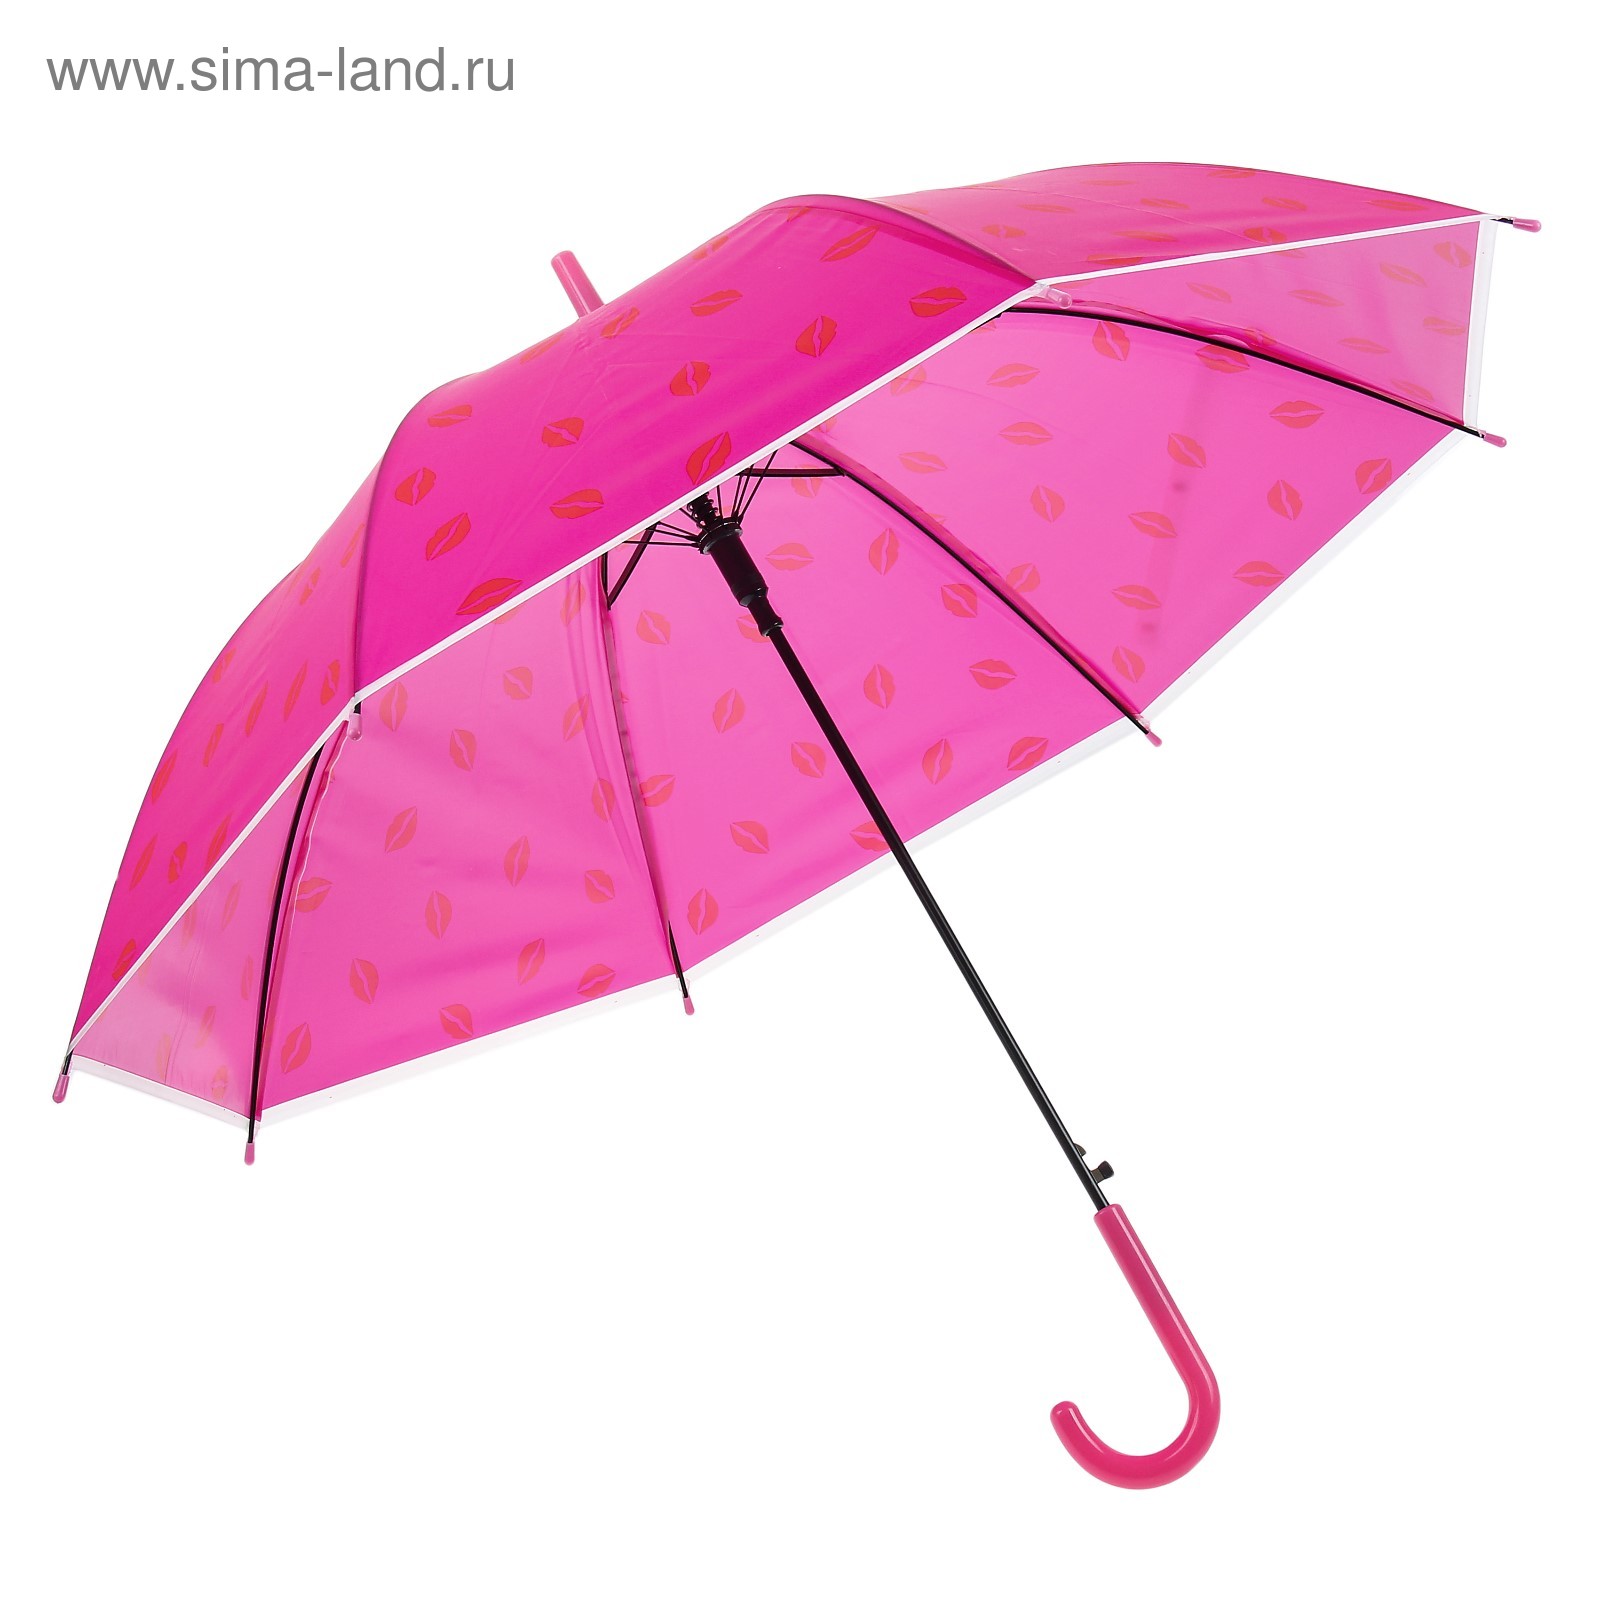 Зонтик купить в москве. Детские зонты. Зонтик для детей. Девочка с зонтиком. Малыш с зонтиком.